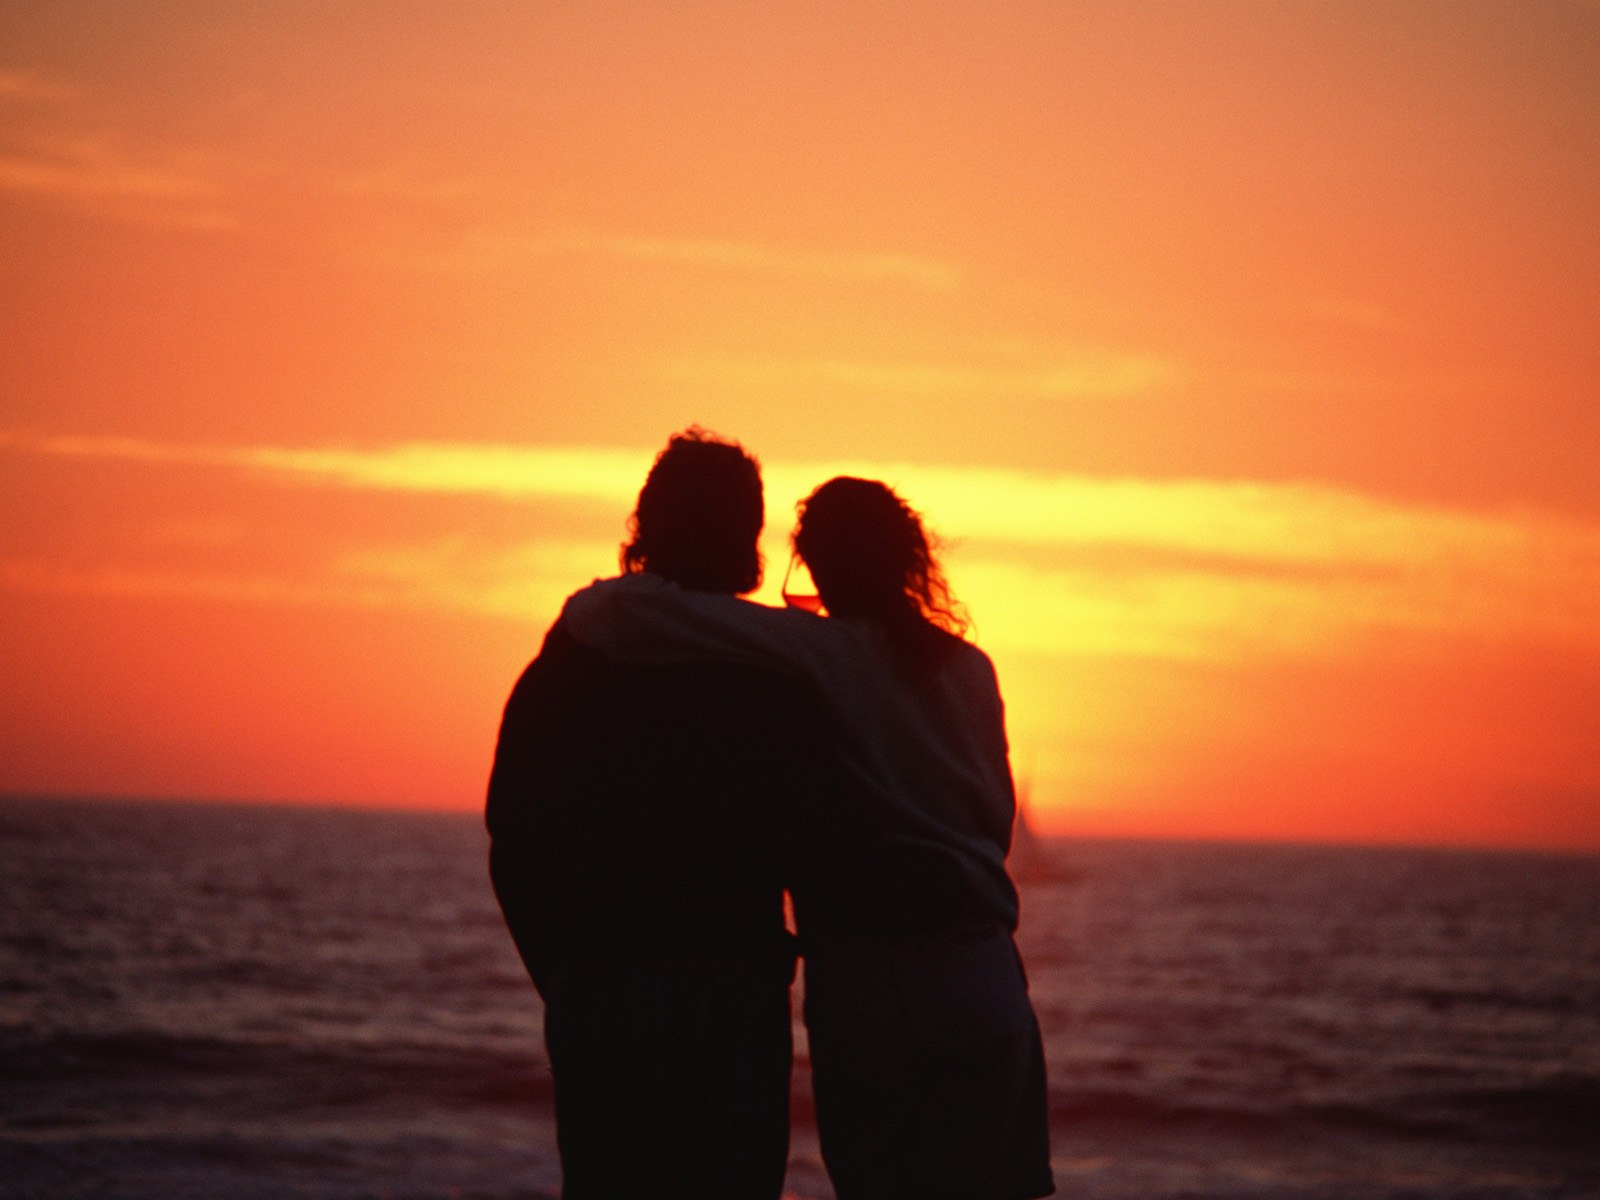 夕阳海岸上一对情侣长椅上的剪影 库存图片. 图片 包括有 户外, 室外, 剪影, 关系, 人员, 夜间 - 221273565